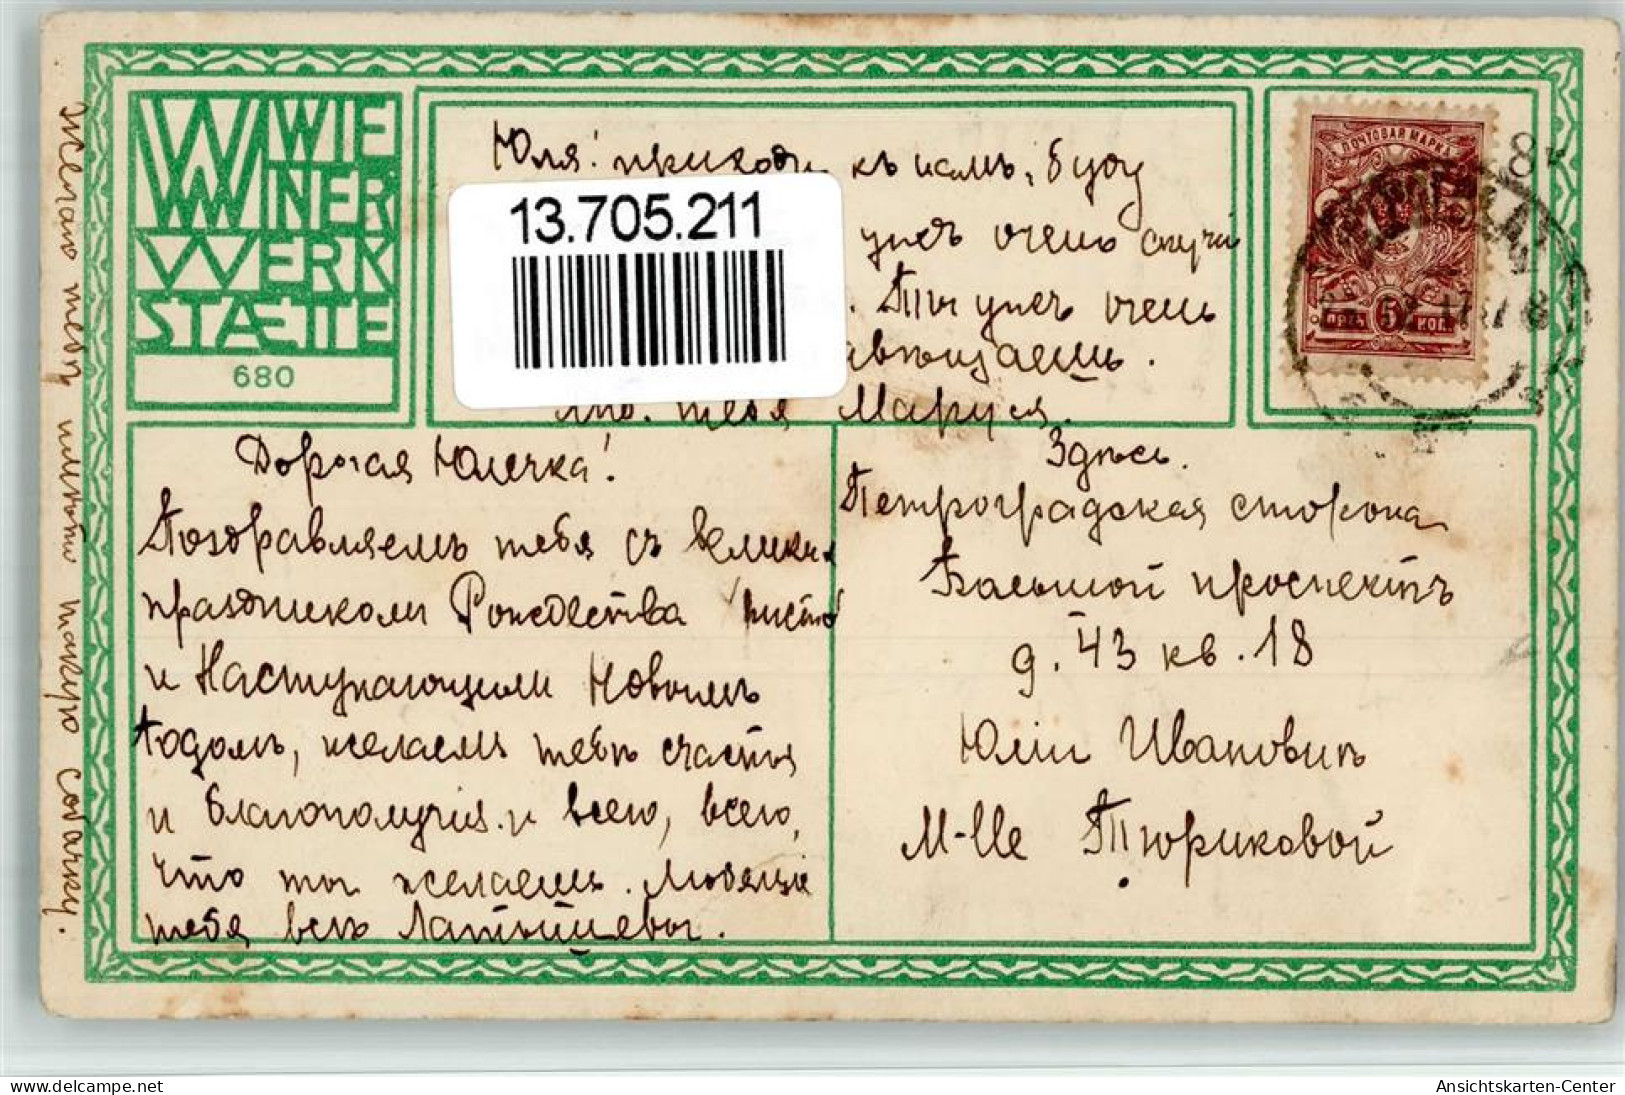 13705211 - WW 680 Jung Moritz Hund - Wiener Werkstaetten